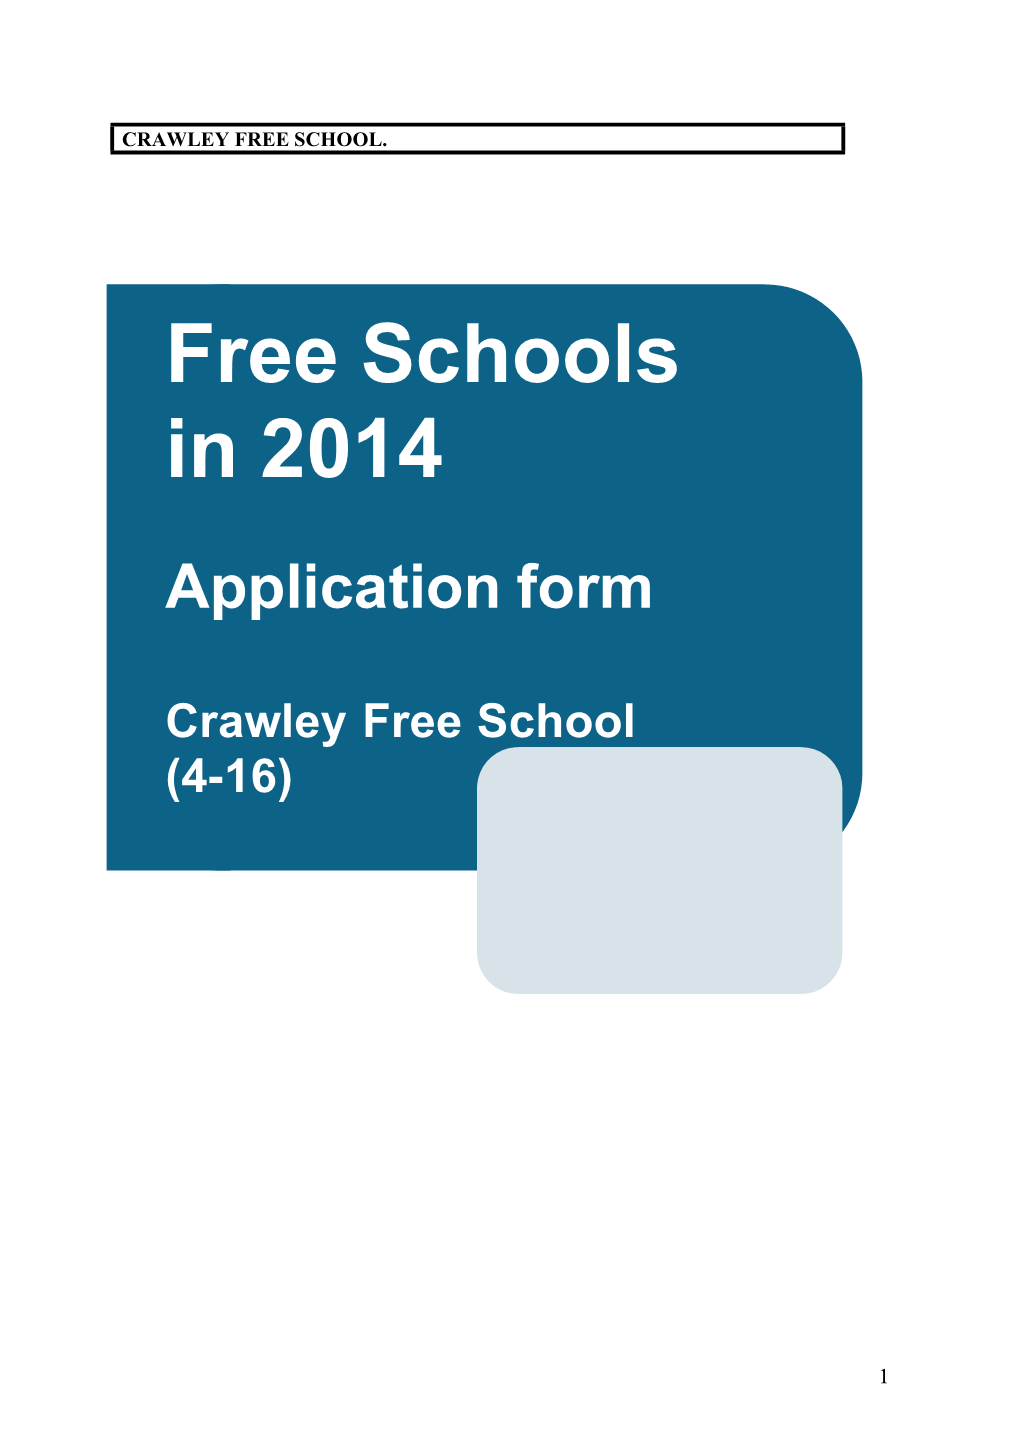 Free Schools in 2014 Application Form Crawley Free School